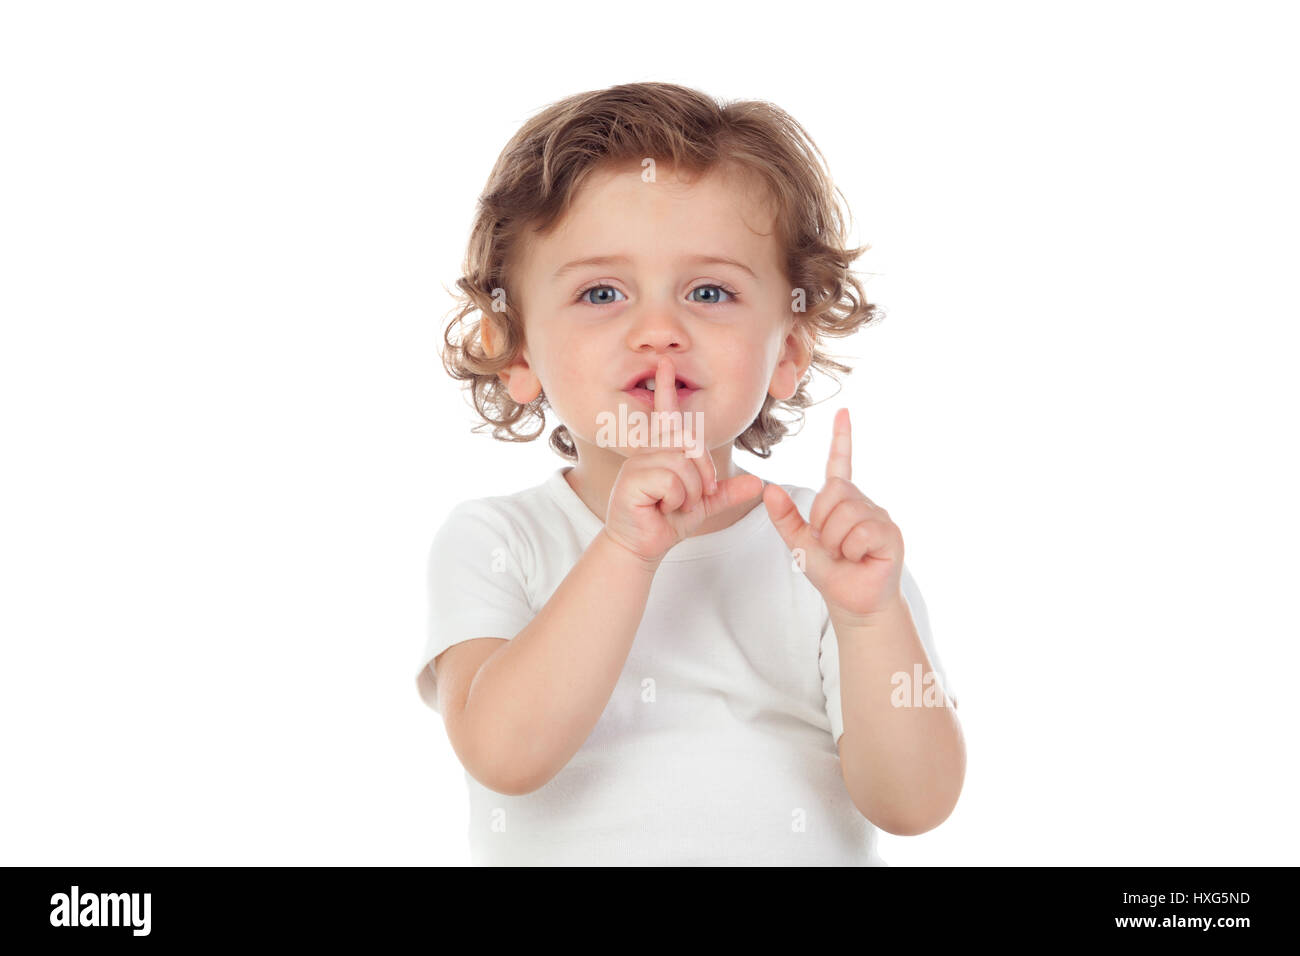 Carino baby ha messo l'indice per labbra come segno di silenzio, isolato su sfondo bianco Foto Stock